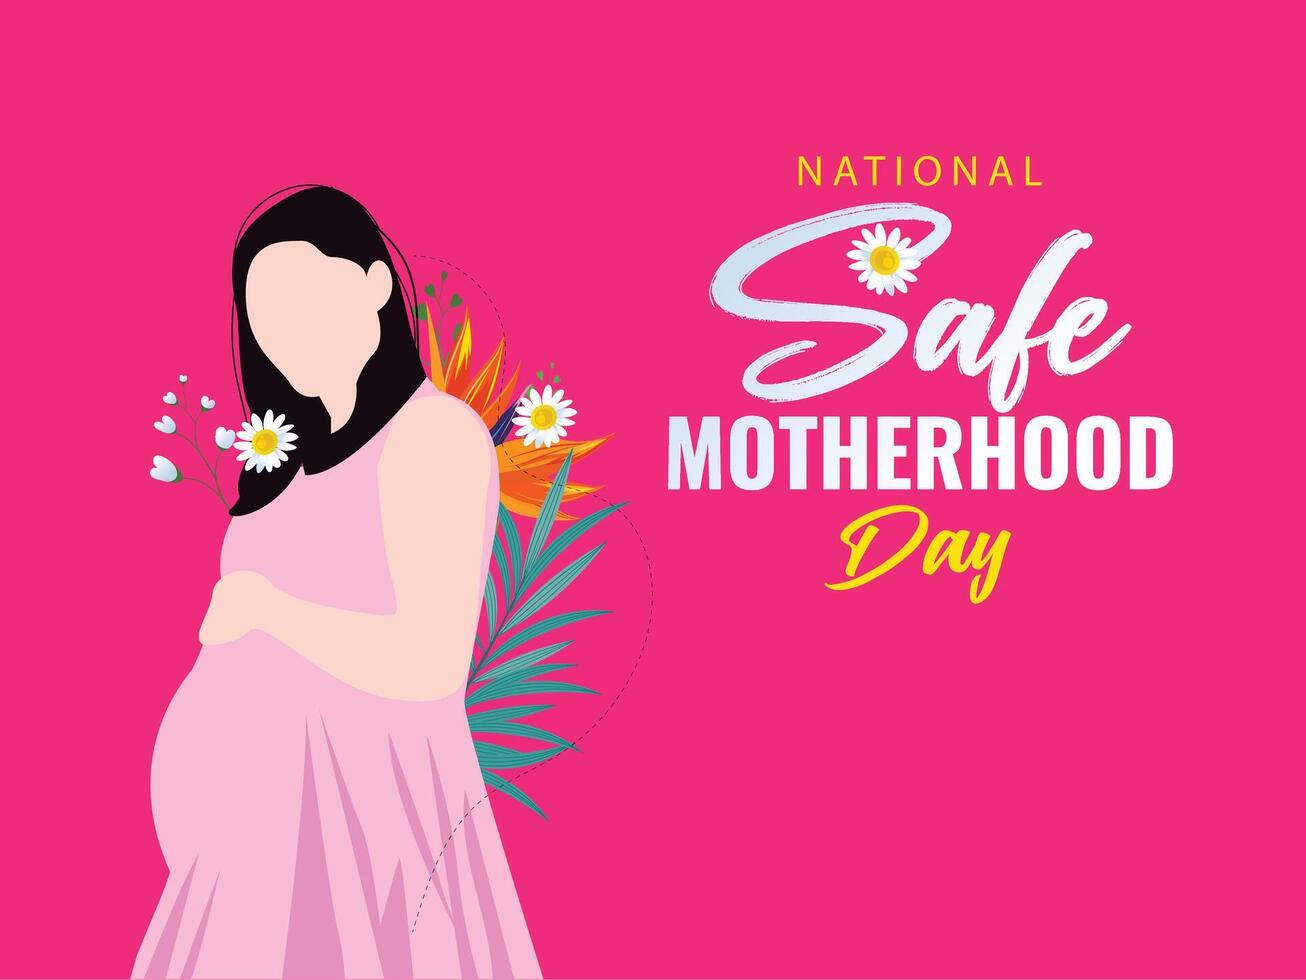 abril 11 nacional seguro maternidade dia editável social meios de comunicação alimentação modelo para grávida mães e bebês cuidados de saúde e maternidade benefícios, seguro mães e bebês vetor